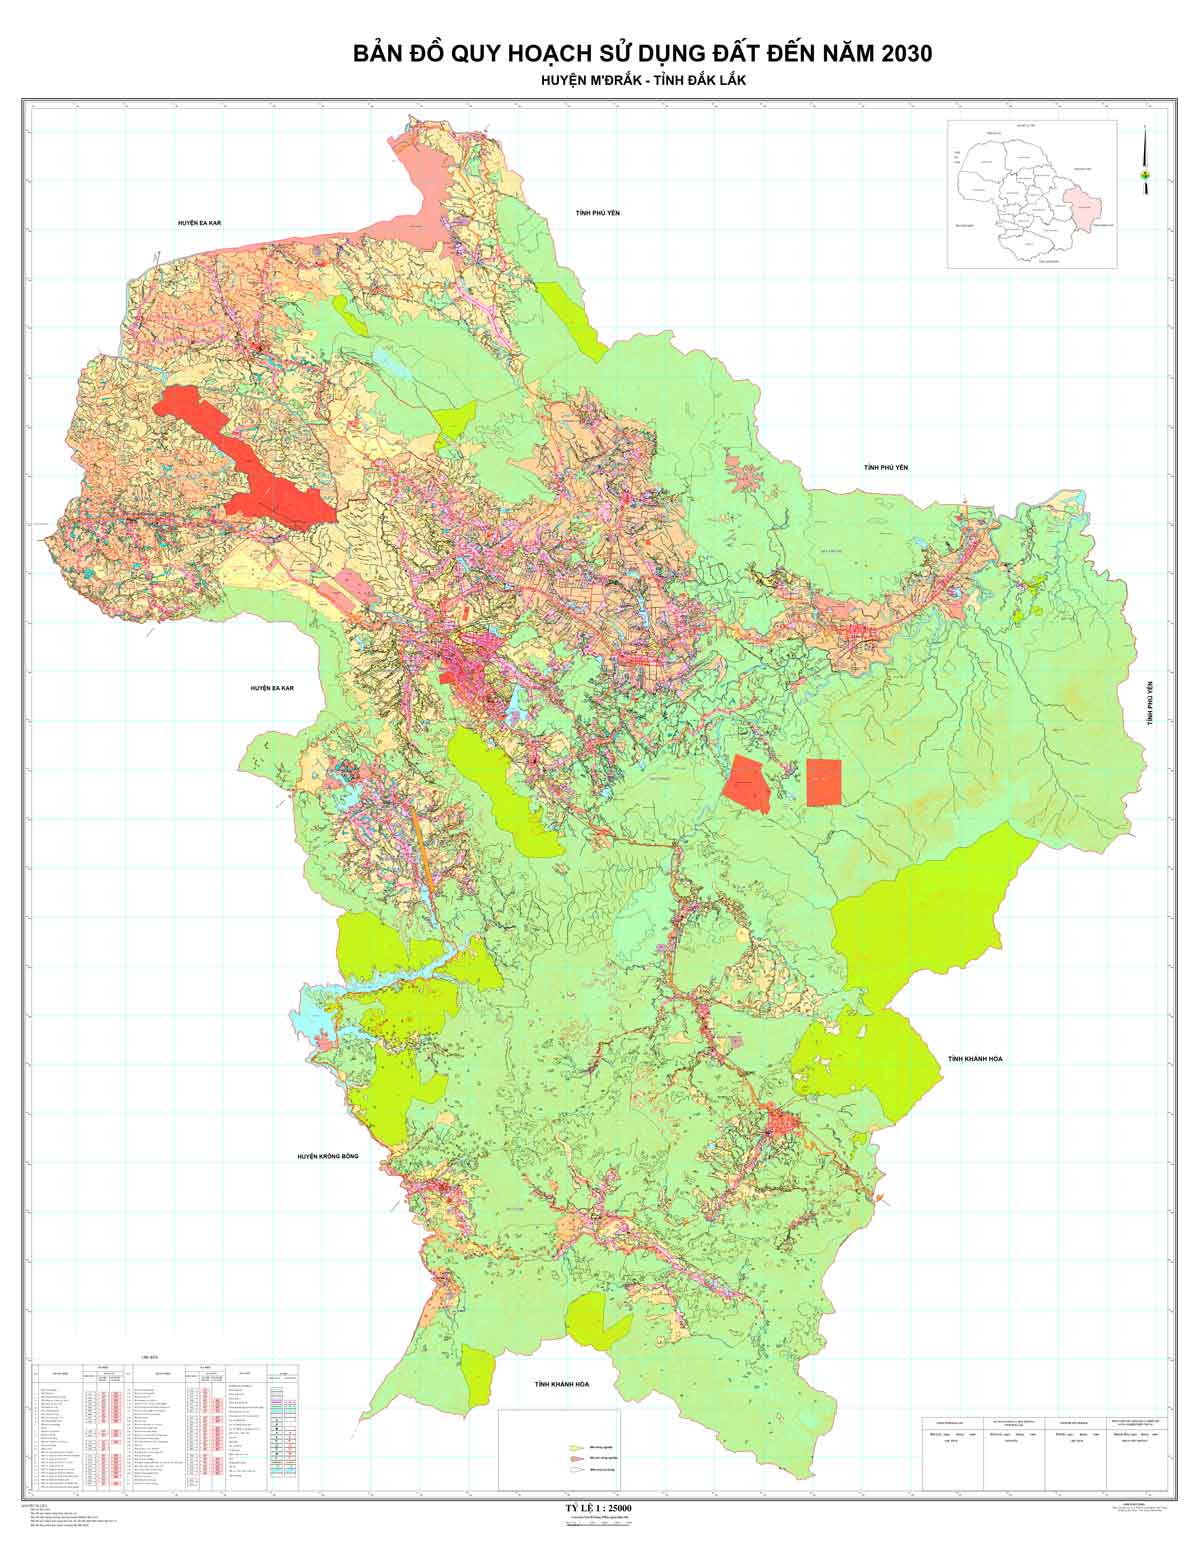 Bản đồ QHSDĐ huyện M'Đrắk đến năm 2030